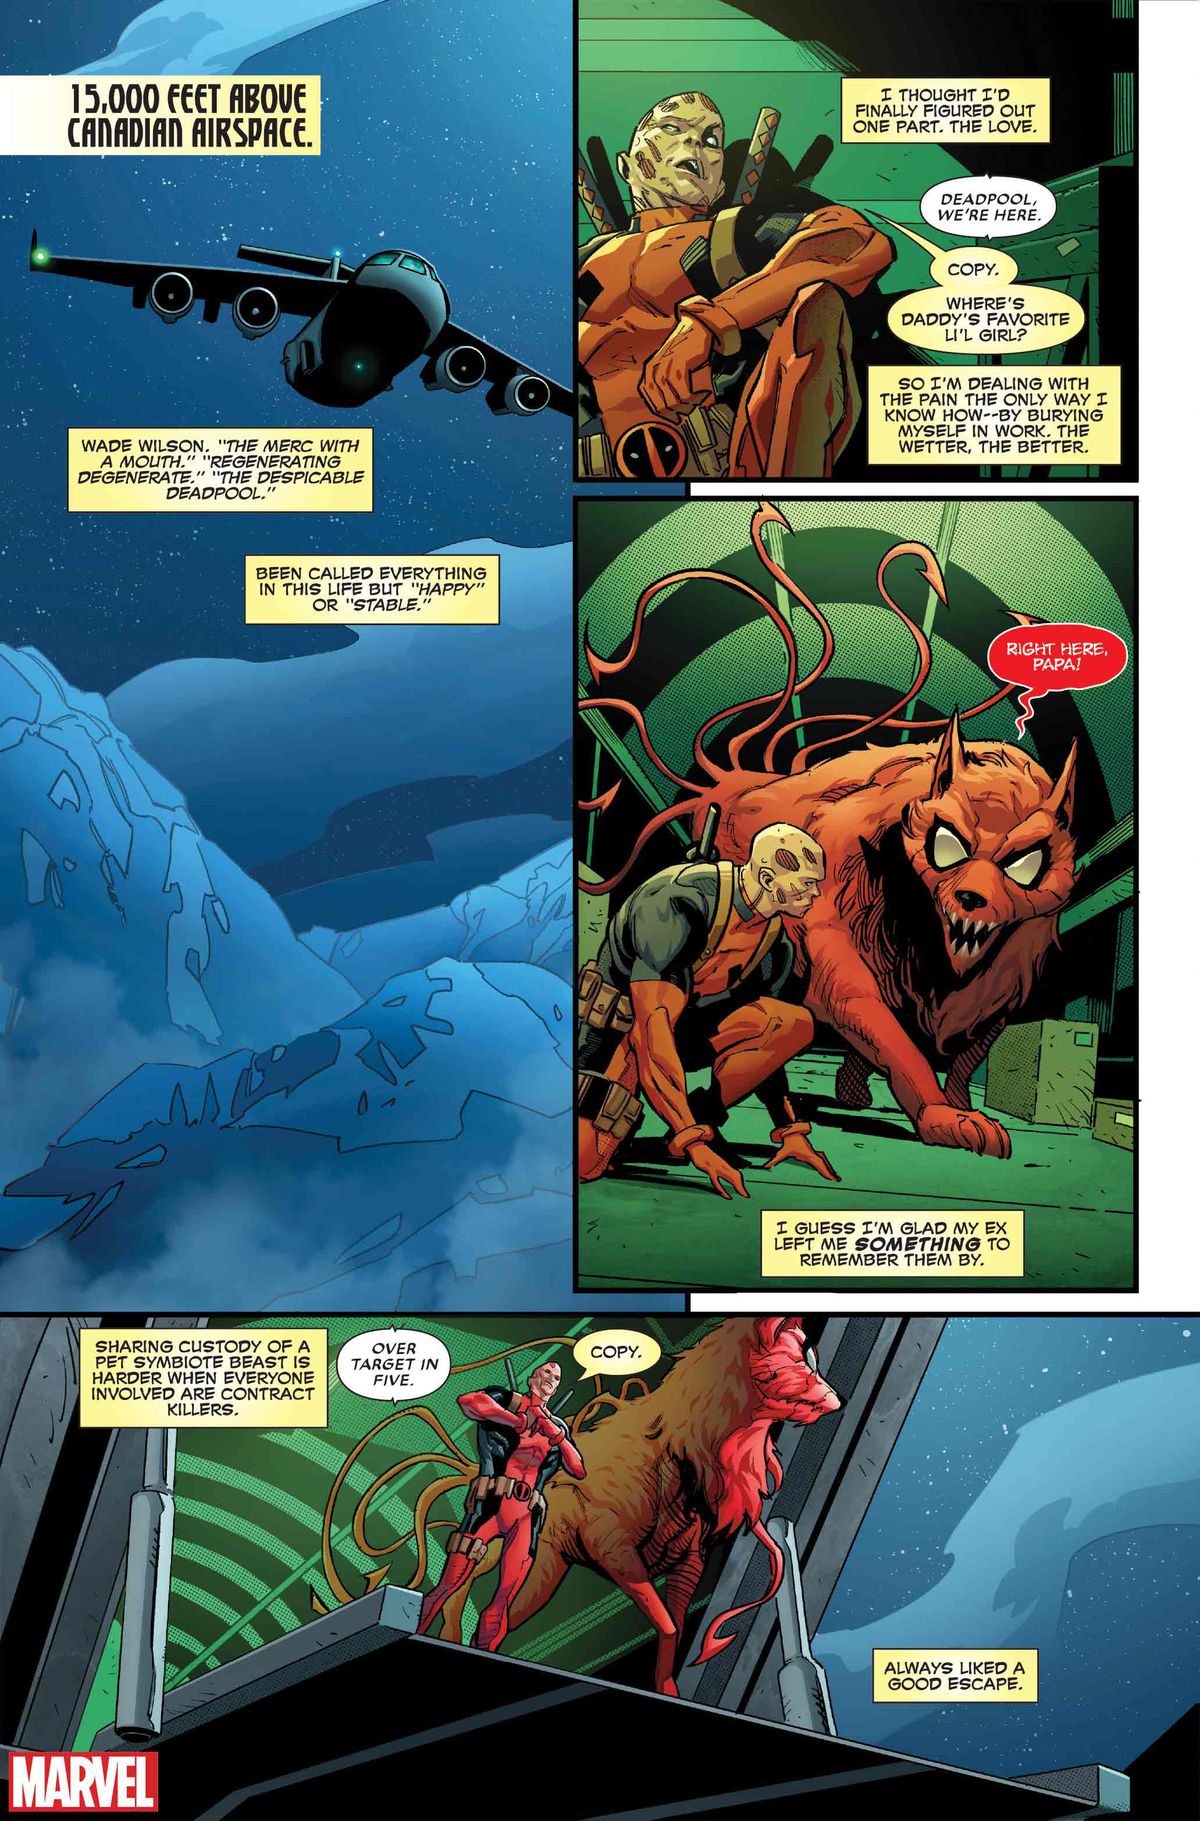 Deadpool och Princess förbereder sig för att hoppa ut ur ett plan i kanadensiskt luftrum, när han funderar över hur han begraver sig i arbetet eftersom han är ledsen över att göra slut med sitt ex i Deadpool #1 (2024). 